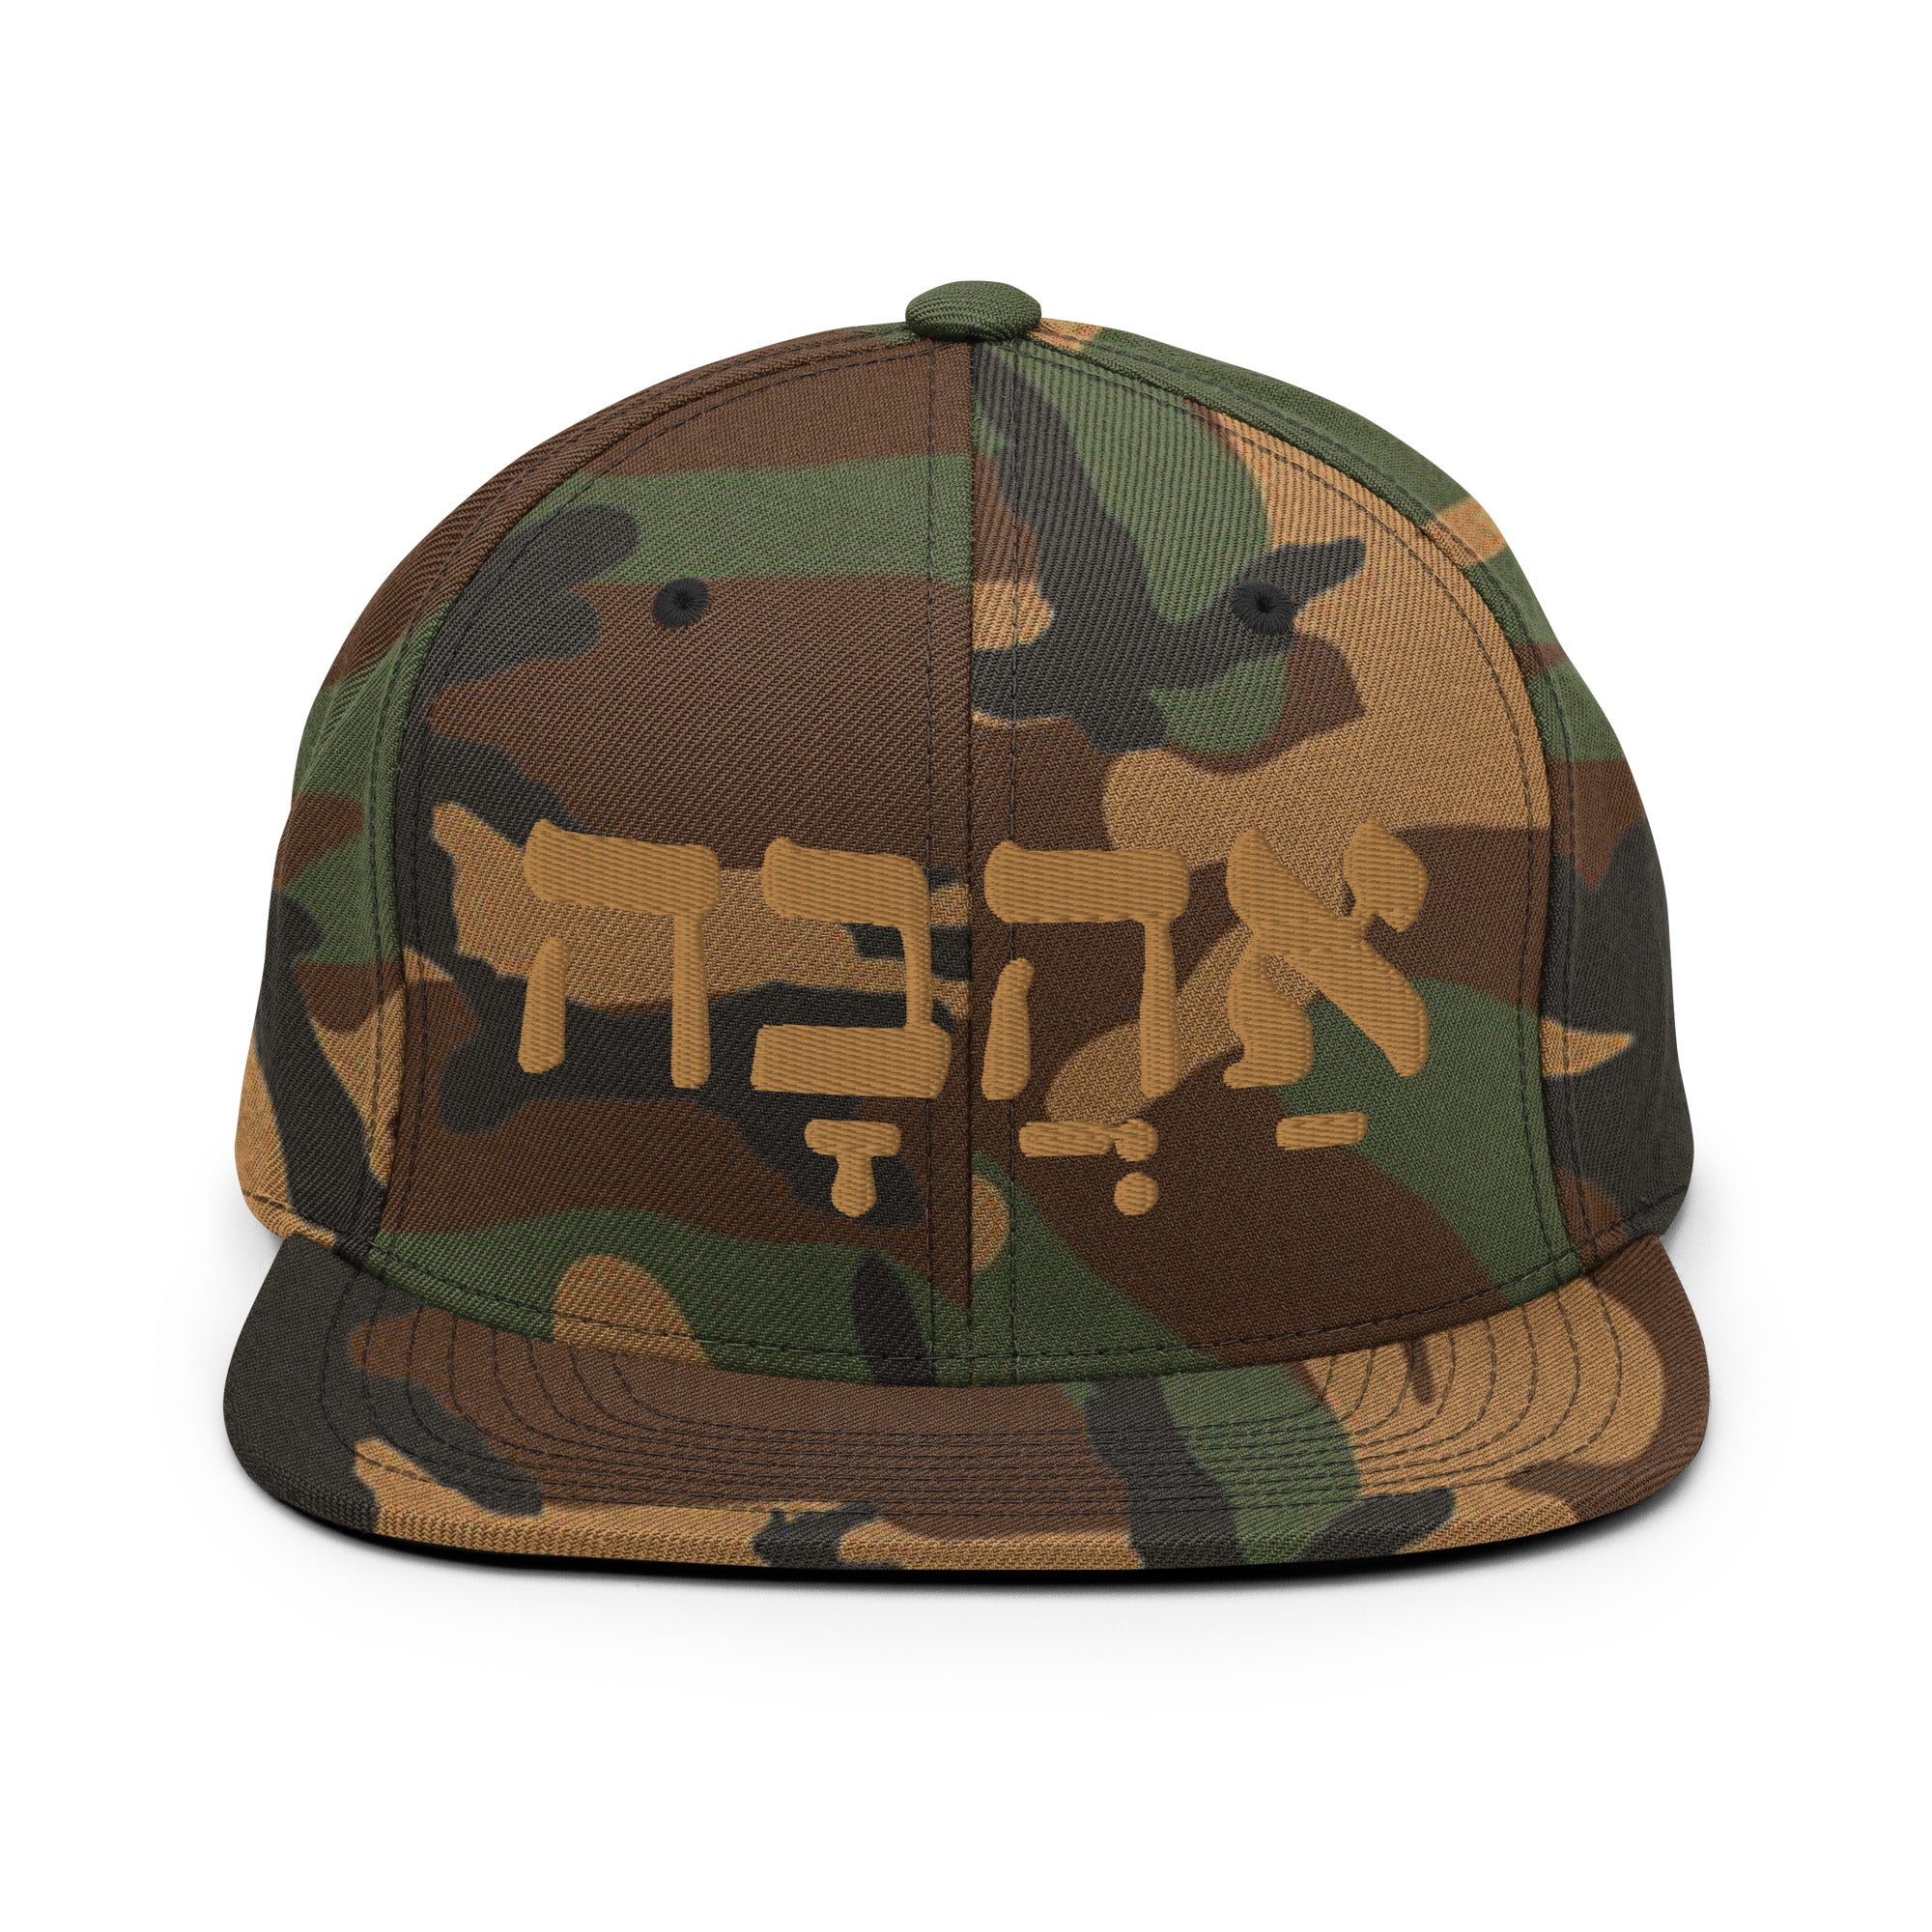 Ahava (Love in hebrew) Snapback Hat